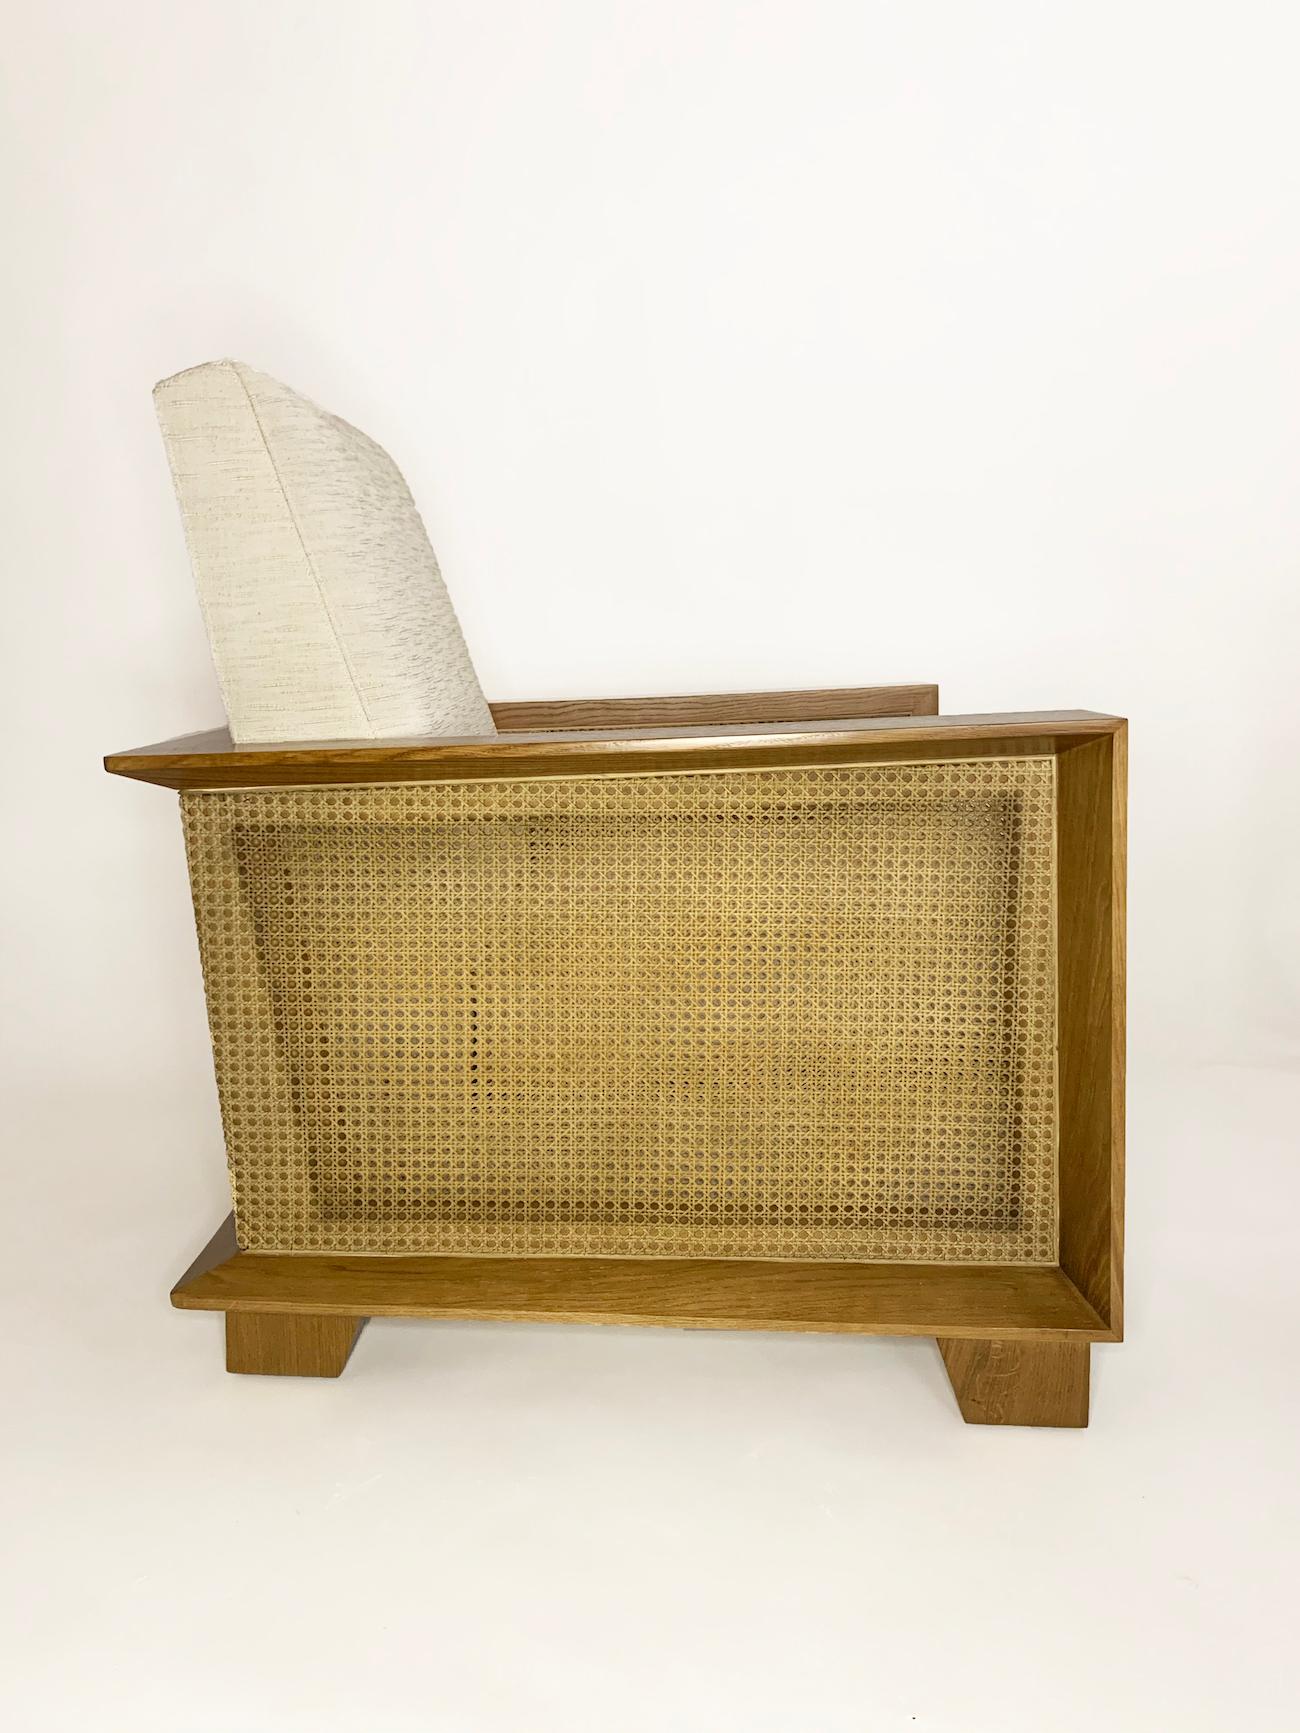 Le fauteuil Marhaba, conçu par Maxime Old, se caractérise par l'utilisation de matériaux vivants. Il était  présenté au Salon des Artistes Décorateurs en 1952. En 1953, le modèle a été utilisé pour le bar situé au rez-de-chaussée de l'hôtel Marhaba